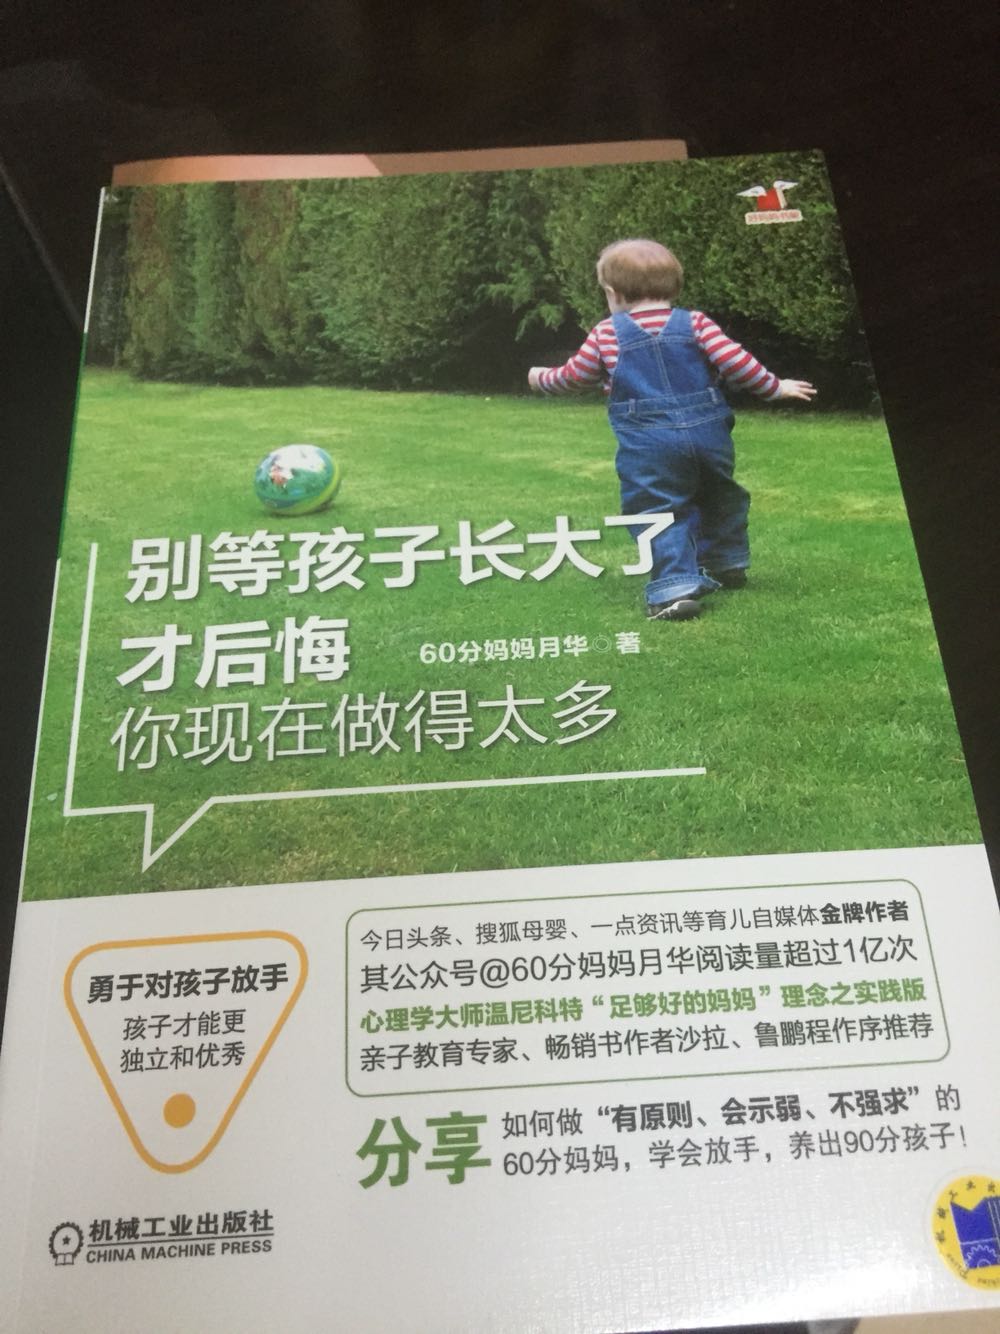 新浪微博真情推荐的一本好书，买来好好学习，希望对宝宝的教育有用